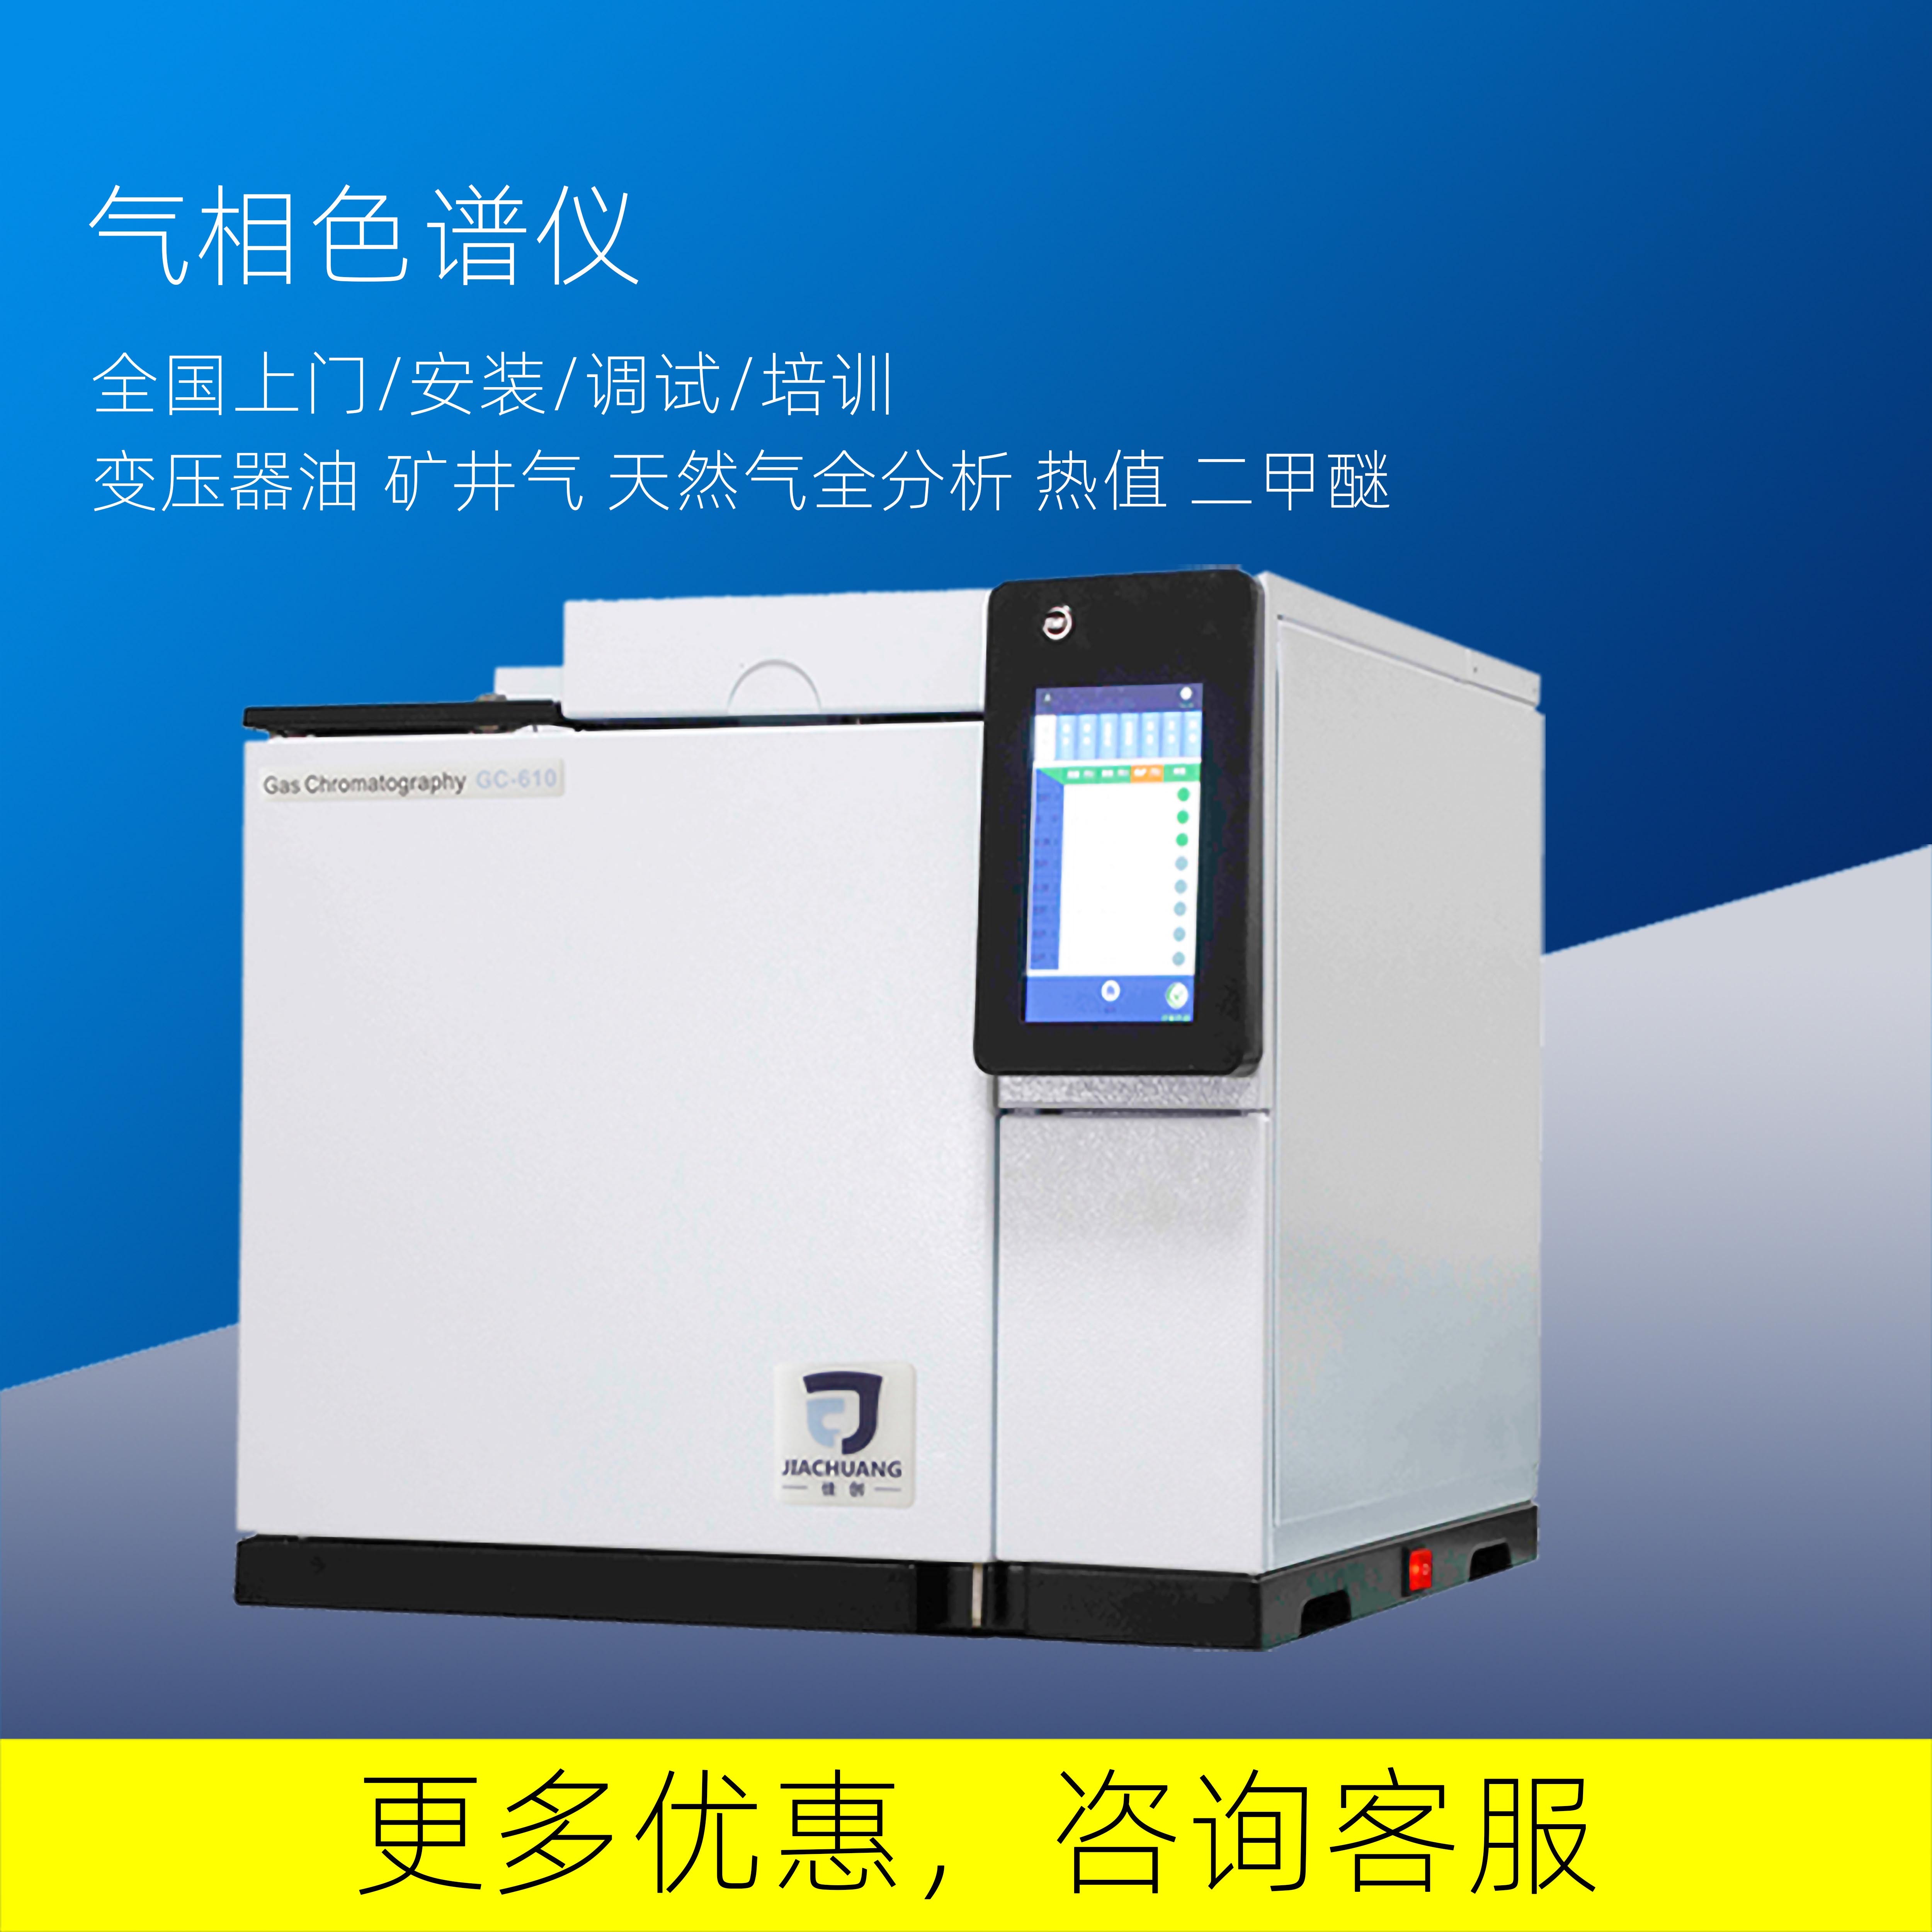 南京佳创供应气相色谱仪GC-610检测环氧乙烷